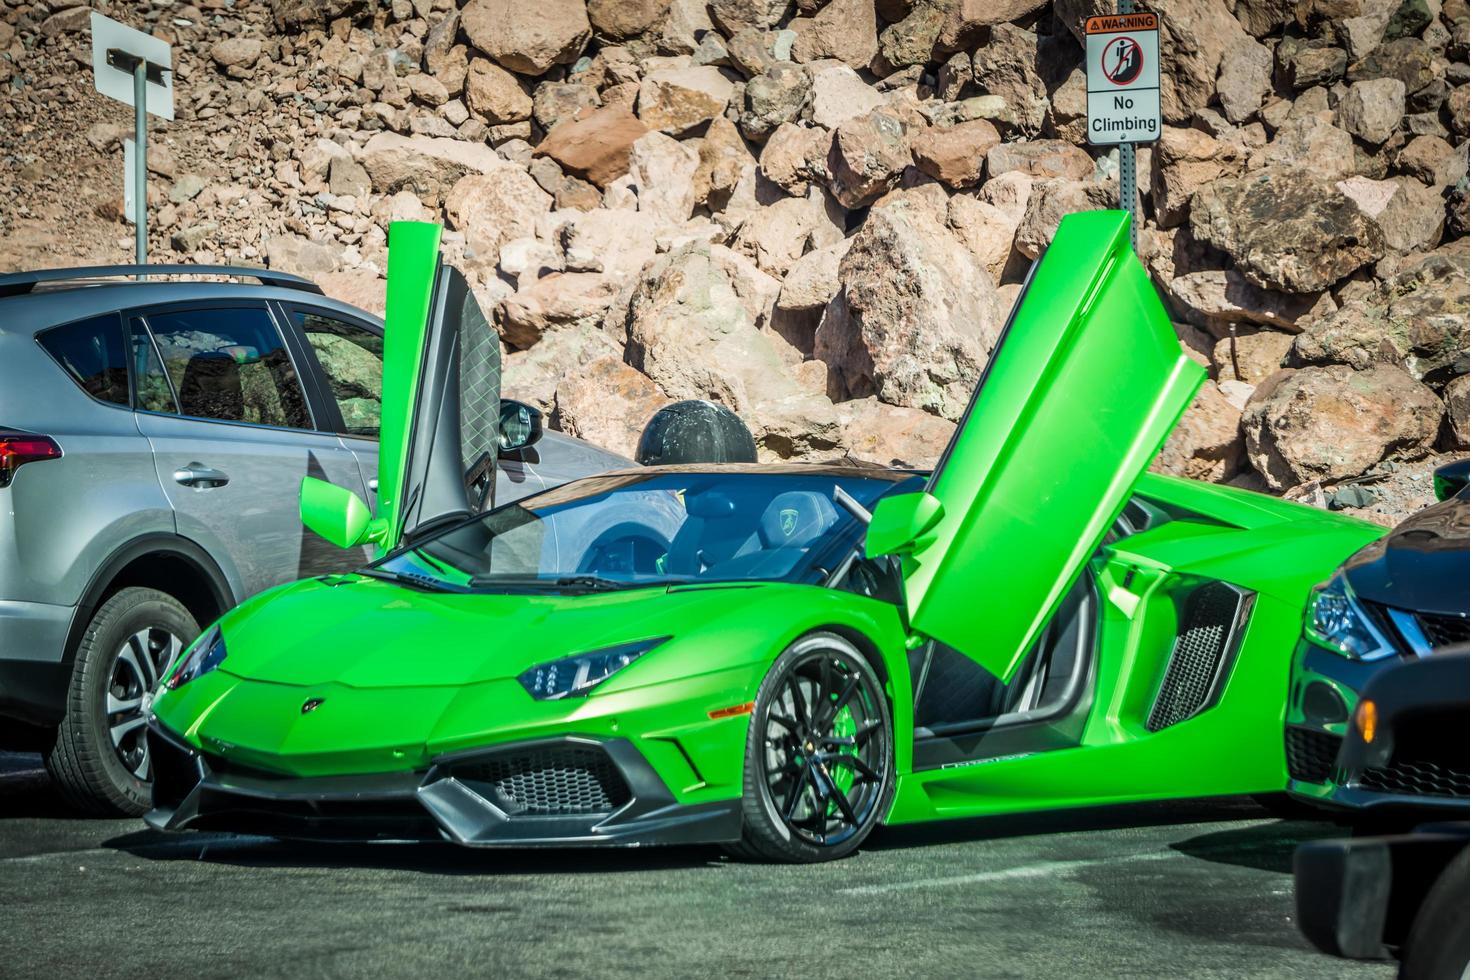 Green Italian Lamborghini car in parking lot at Hoover Dam photo